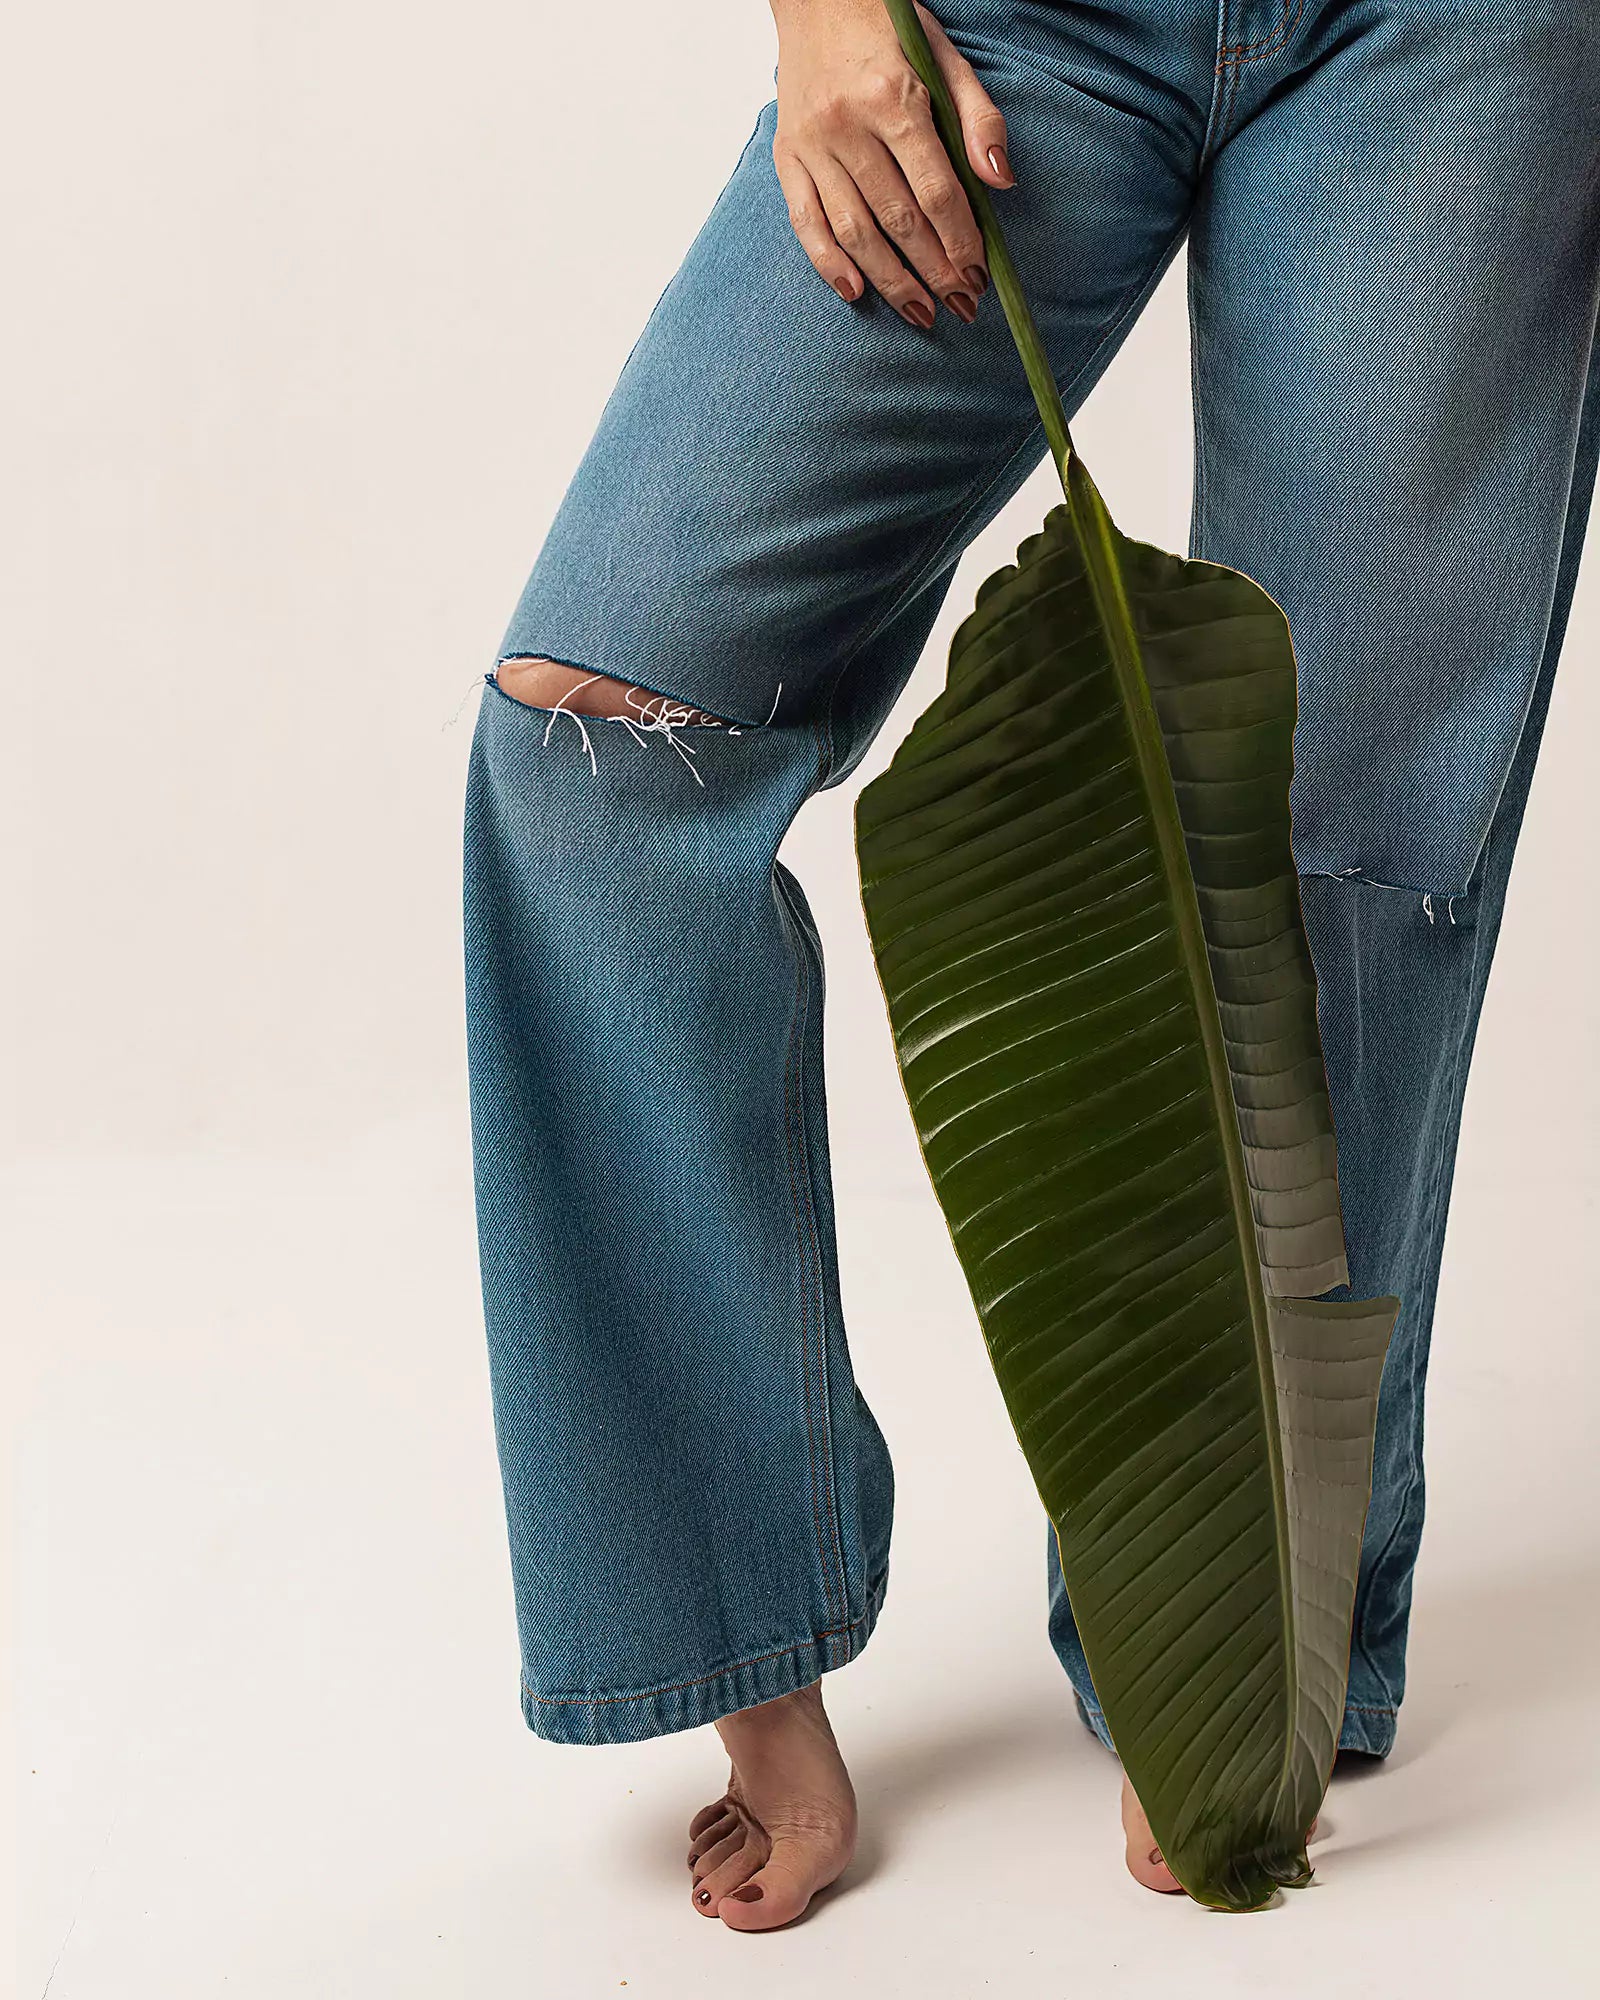 Calça Wide Leg com Rasgos Jeans Azul Médio Eco Denim™. Compre online moda sustentável e atemporal na Minimadeia. Roupas femininas estilosas, básicas e sustentáveis. Foto produto 04